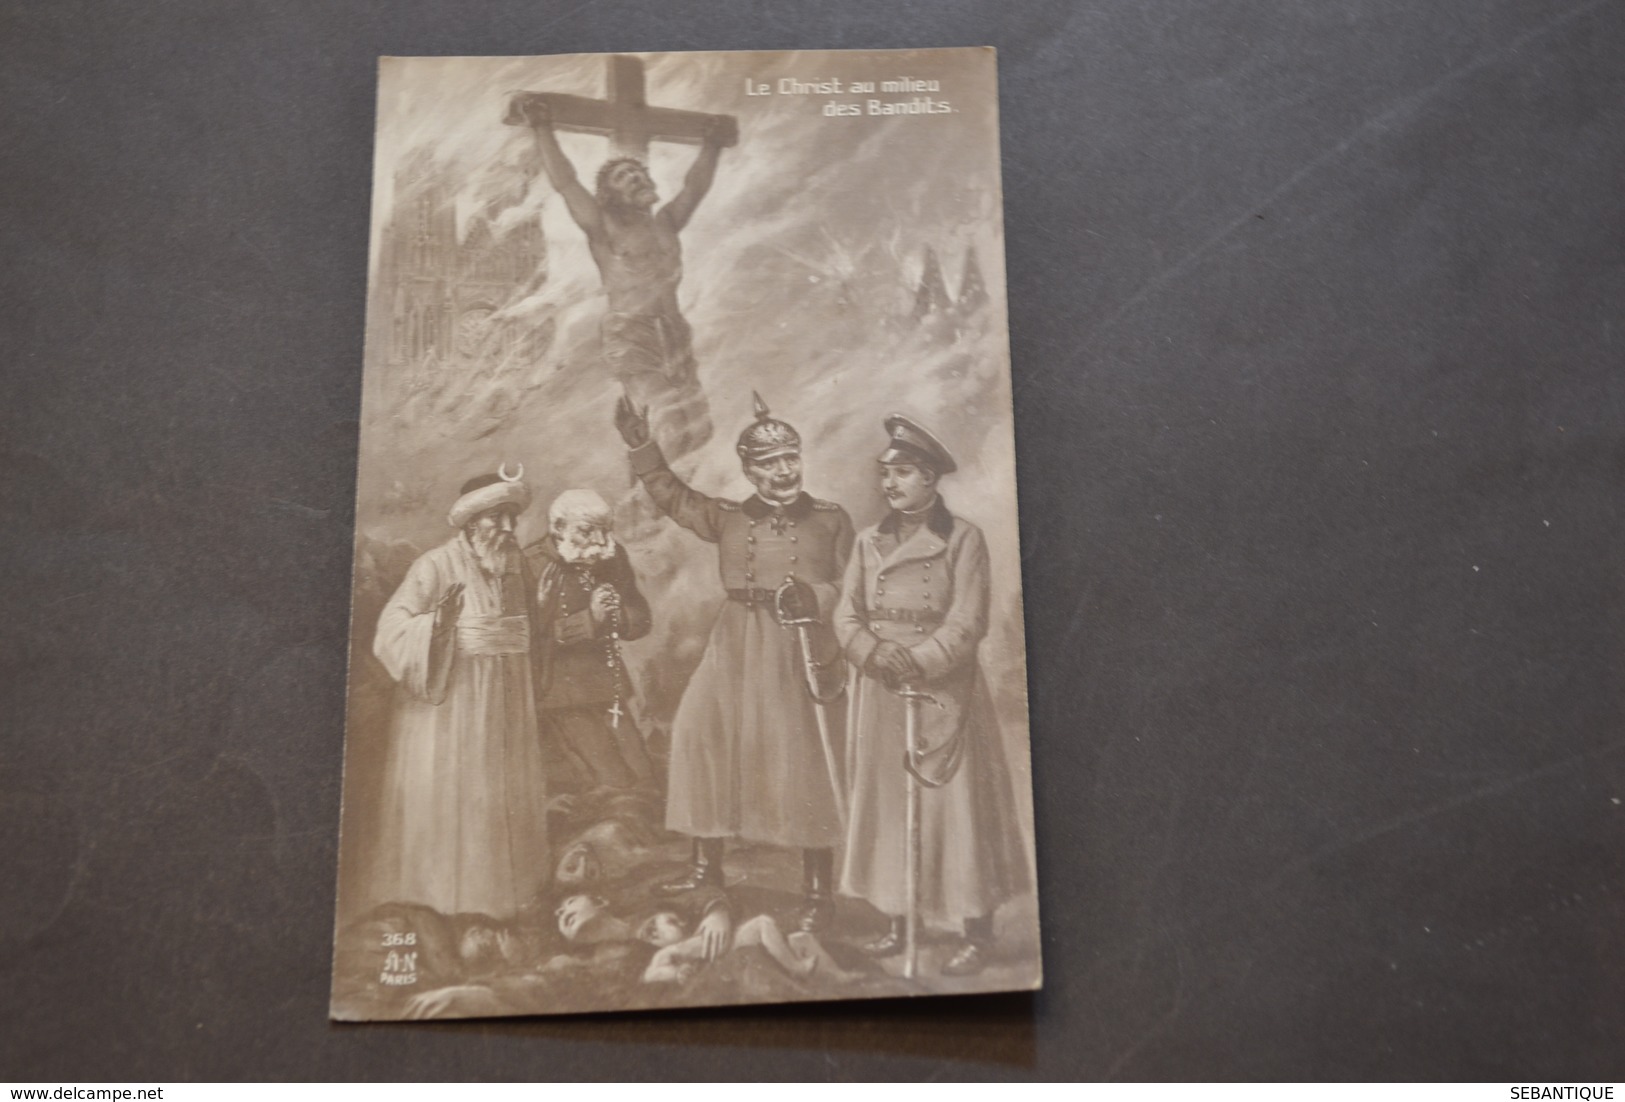 Carte Postale 1910 Le Christ Au Milieu Des Bandits - Patriotiques